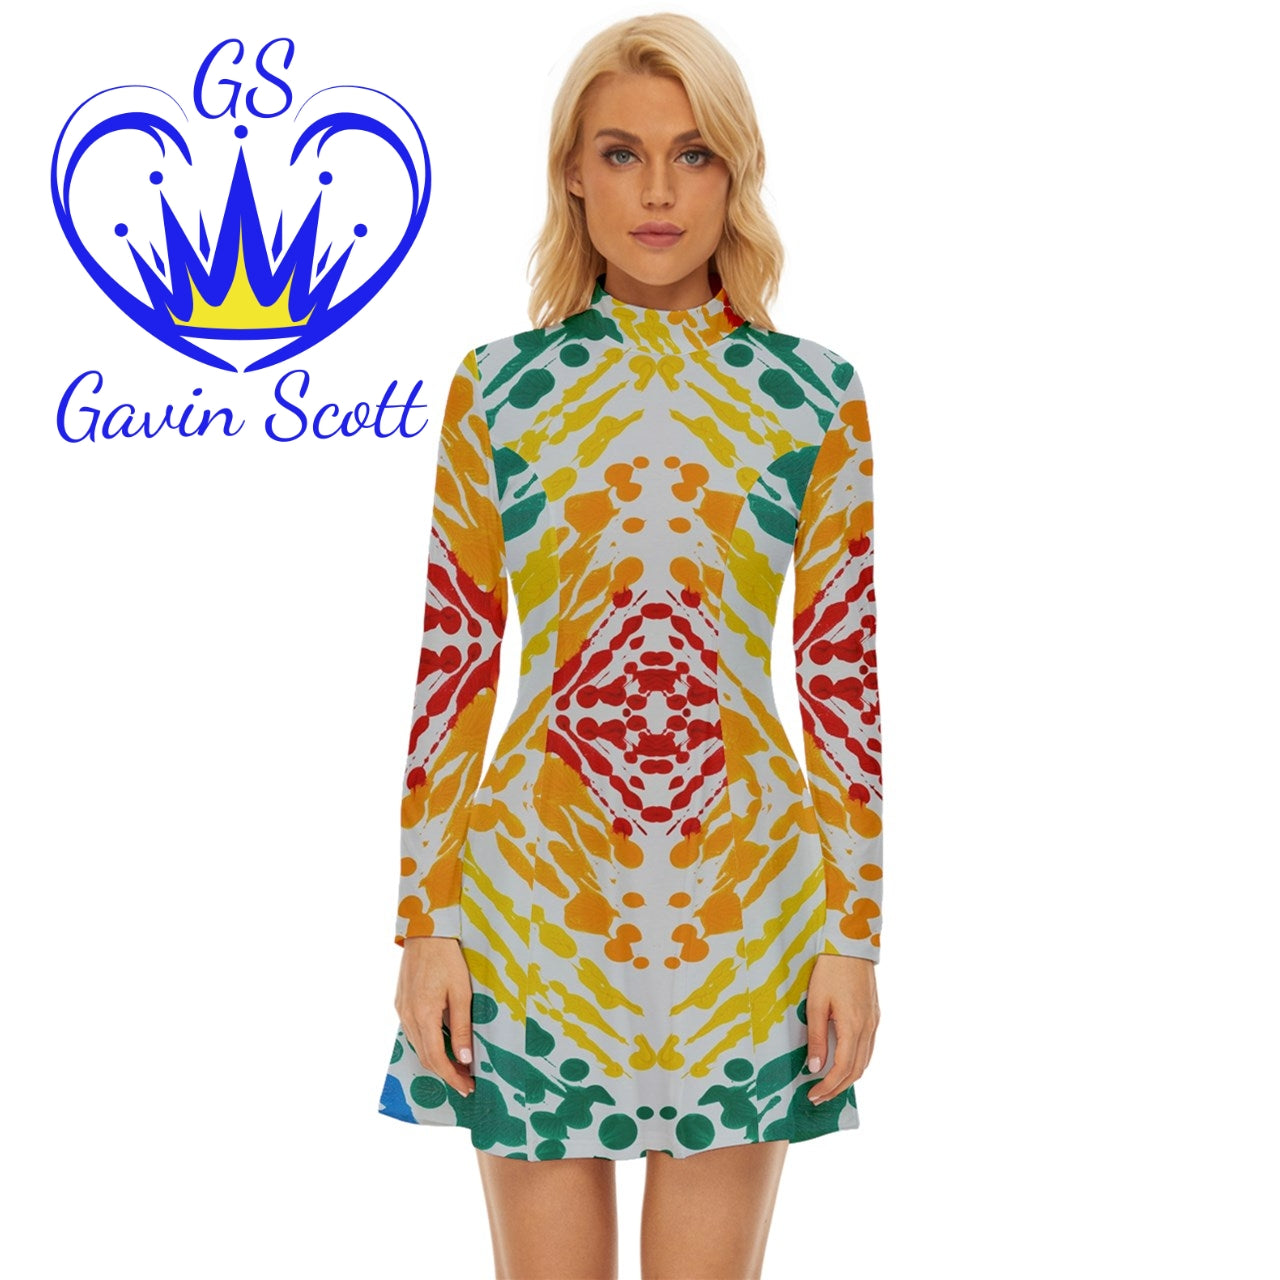 Gavin Scott Velour Longline Dress (Femme XS-5XL)